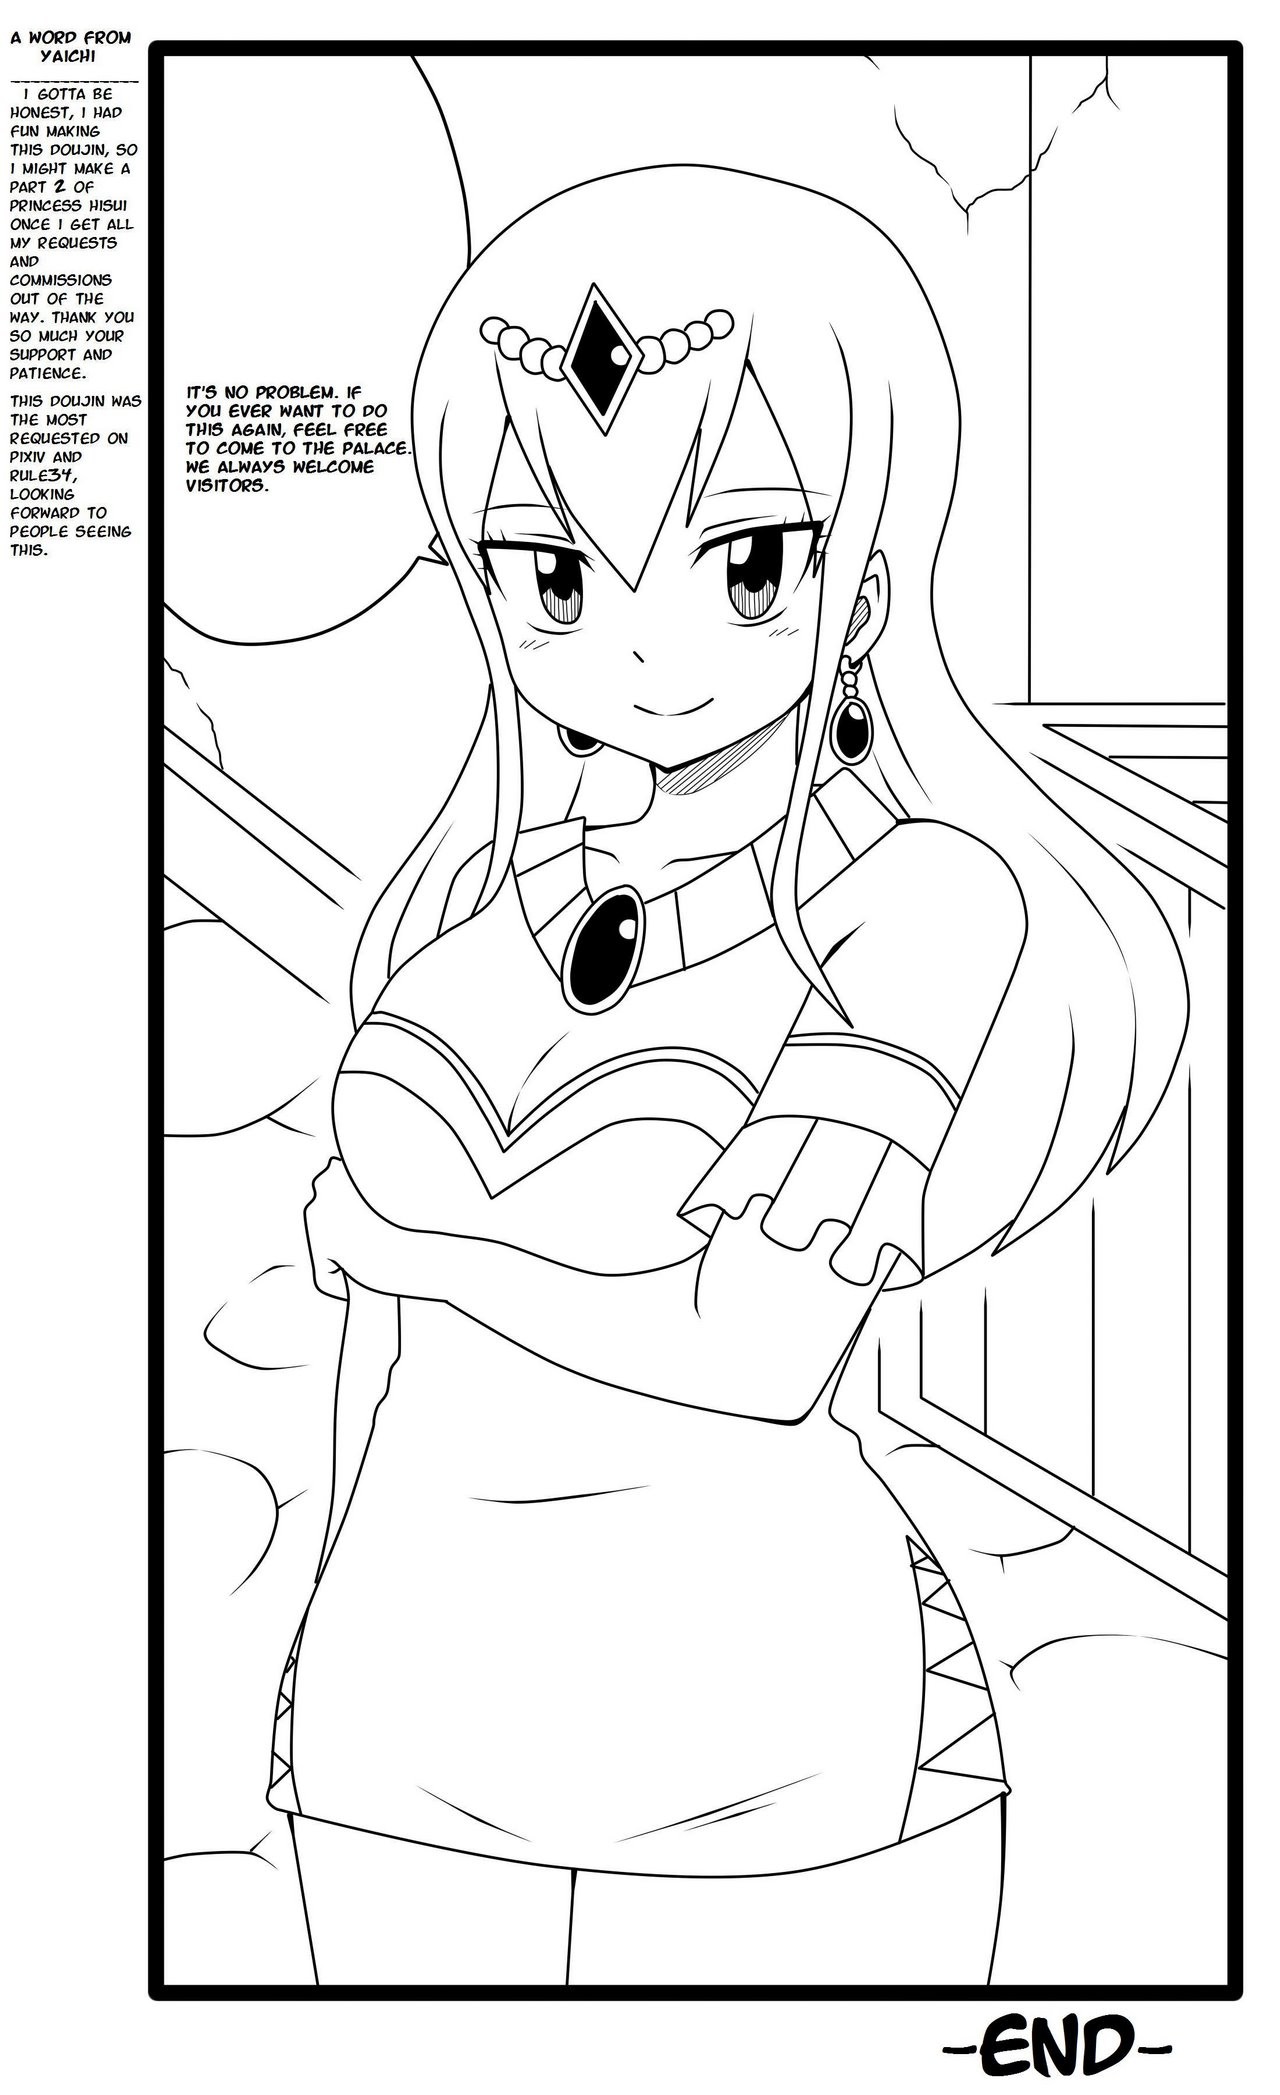 Hisui's Royal Treatment porn comic picture 10